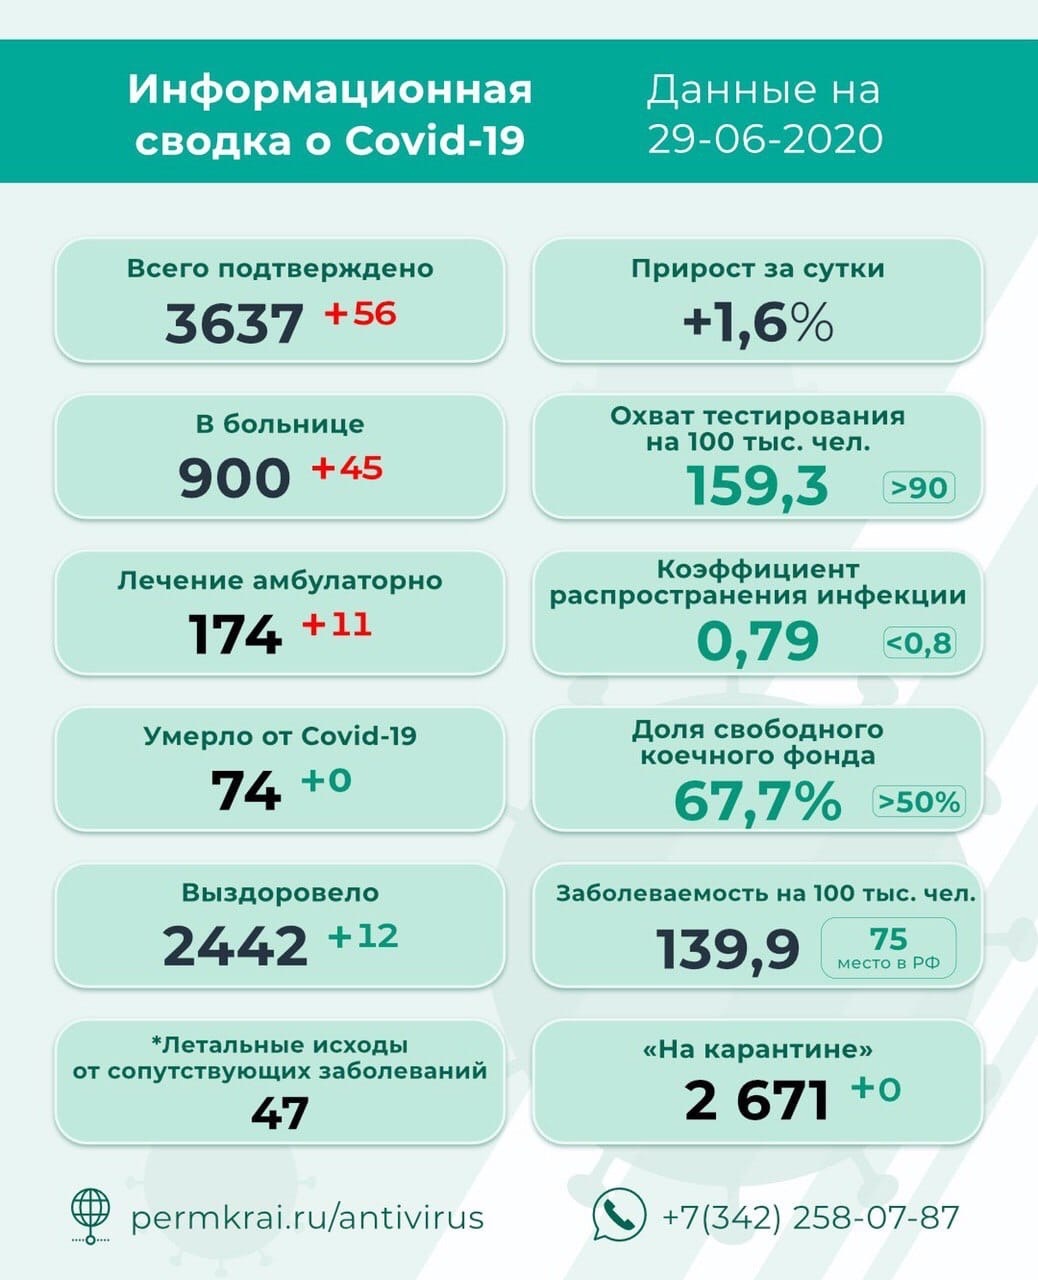 Число подтвержденных случаев коронавируса в Пермском крае выросло до 3637